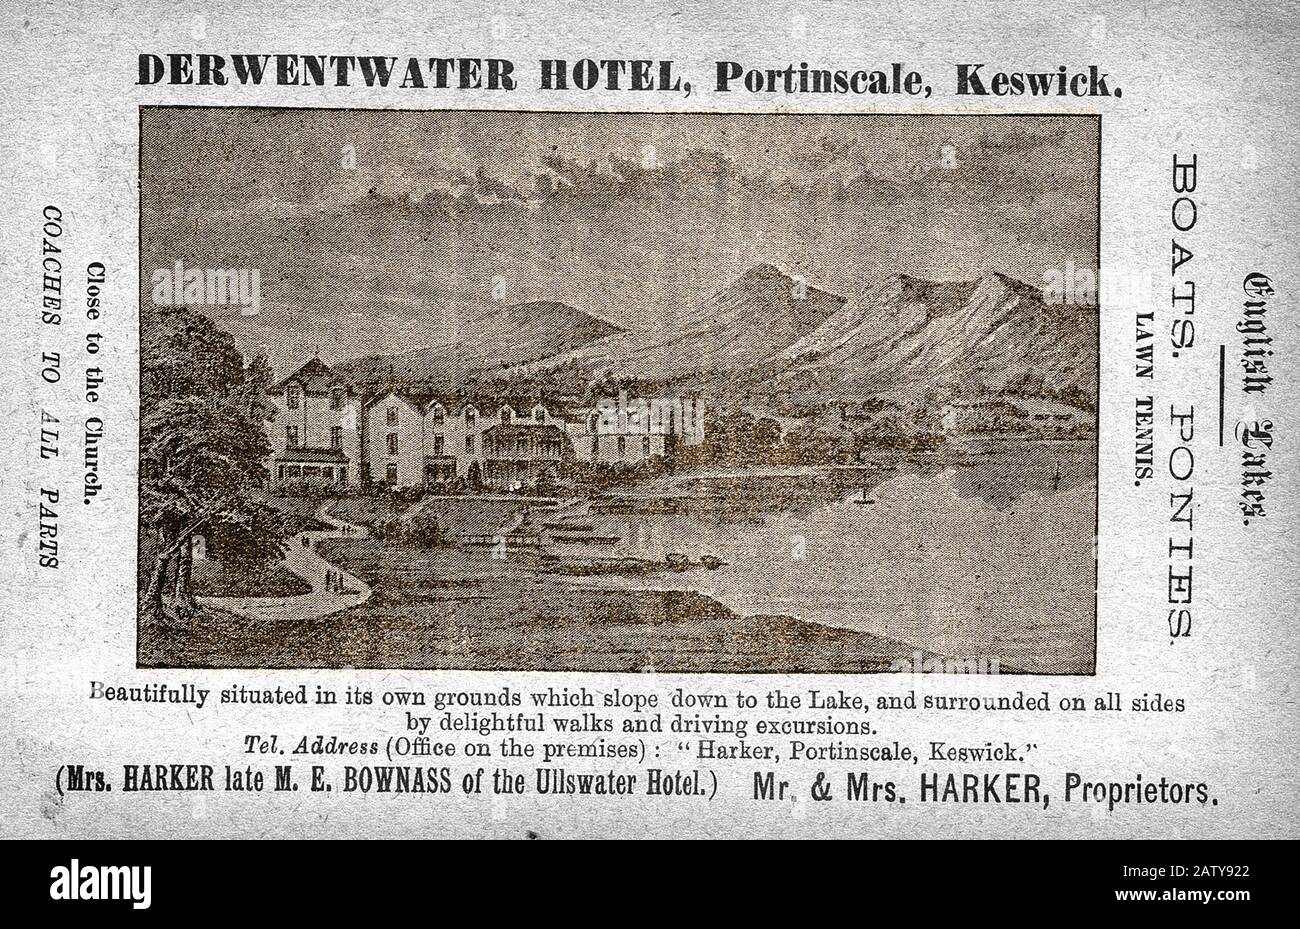 1890 British railway guide advertisement for the Derwentwater Hotel Stock Photo